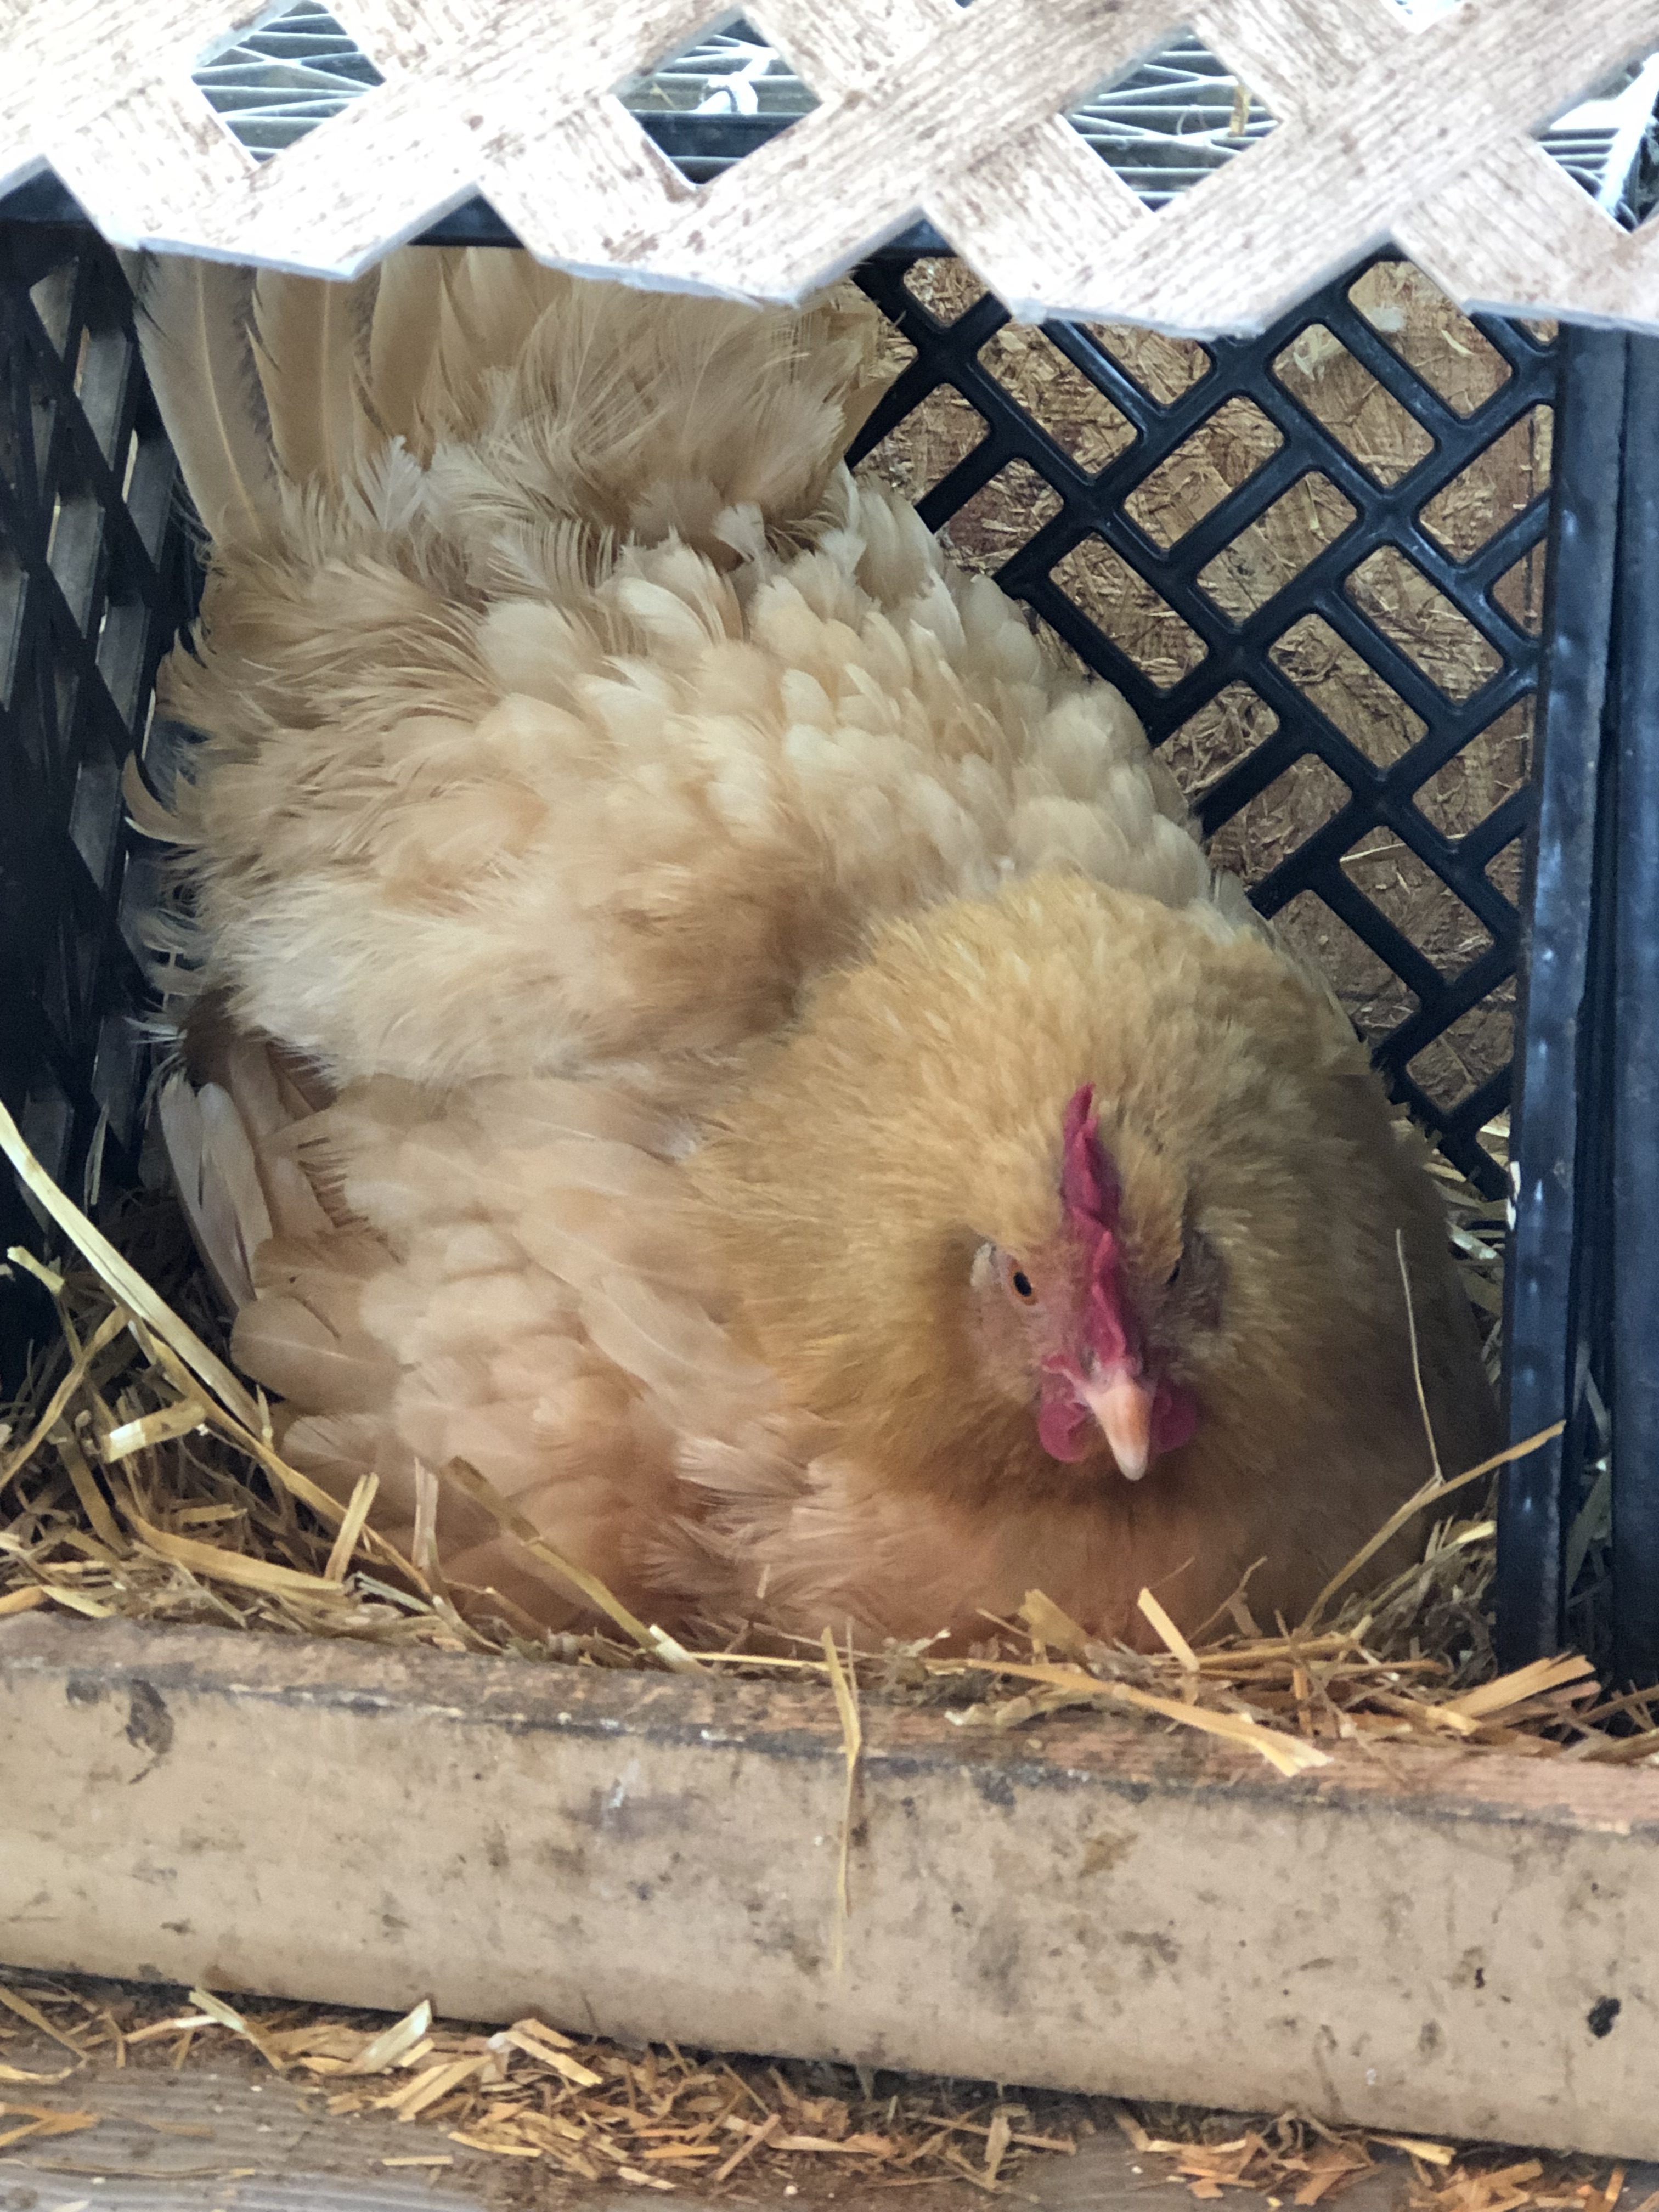 nesting chicken